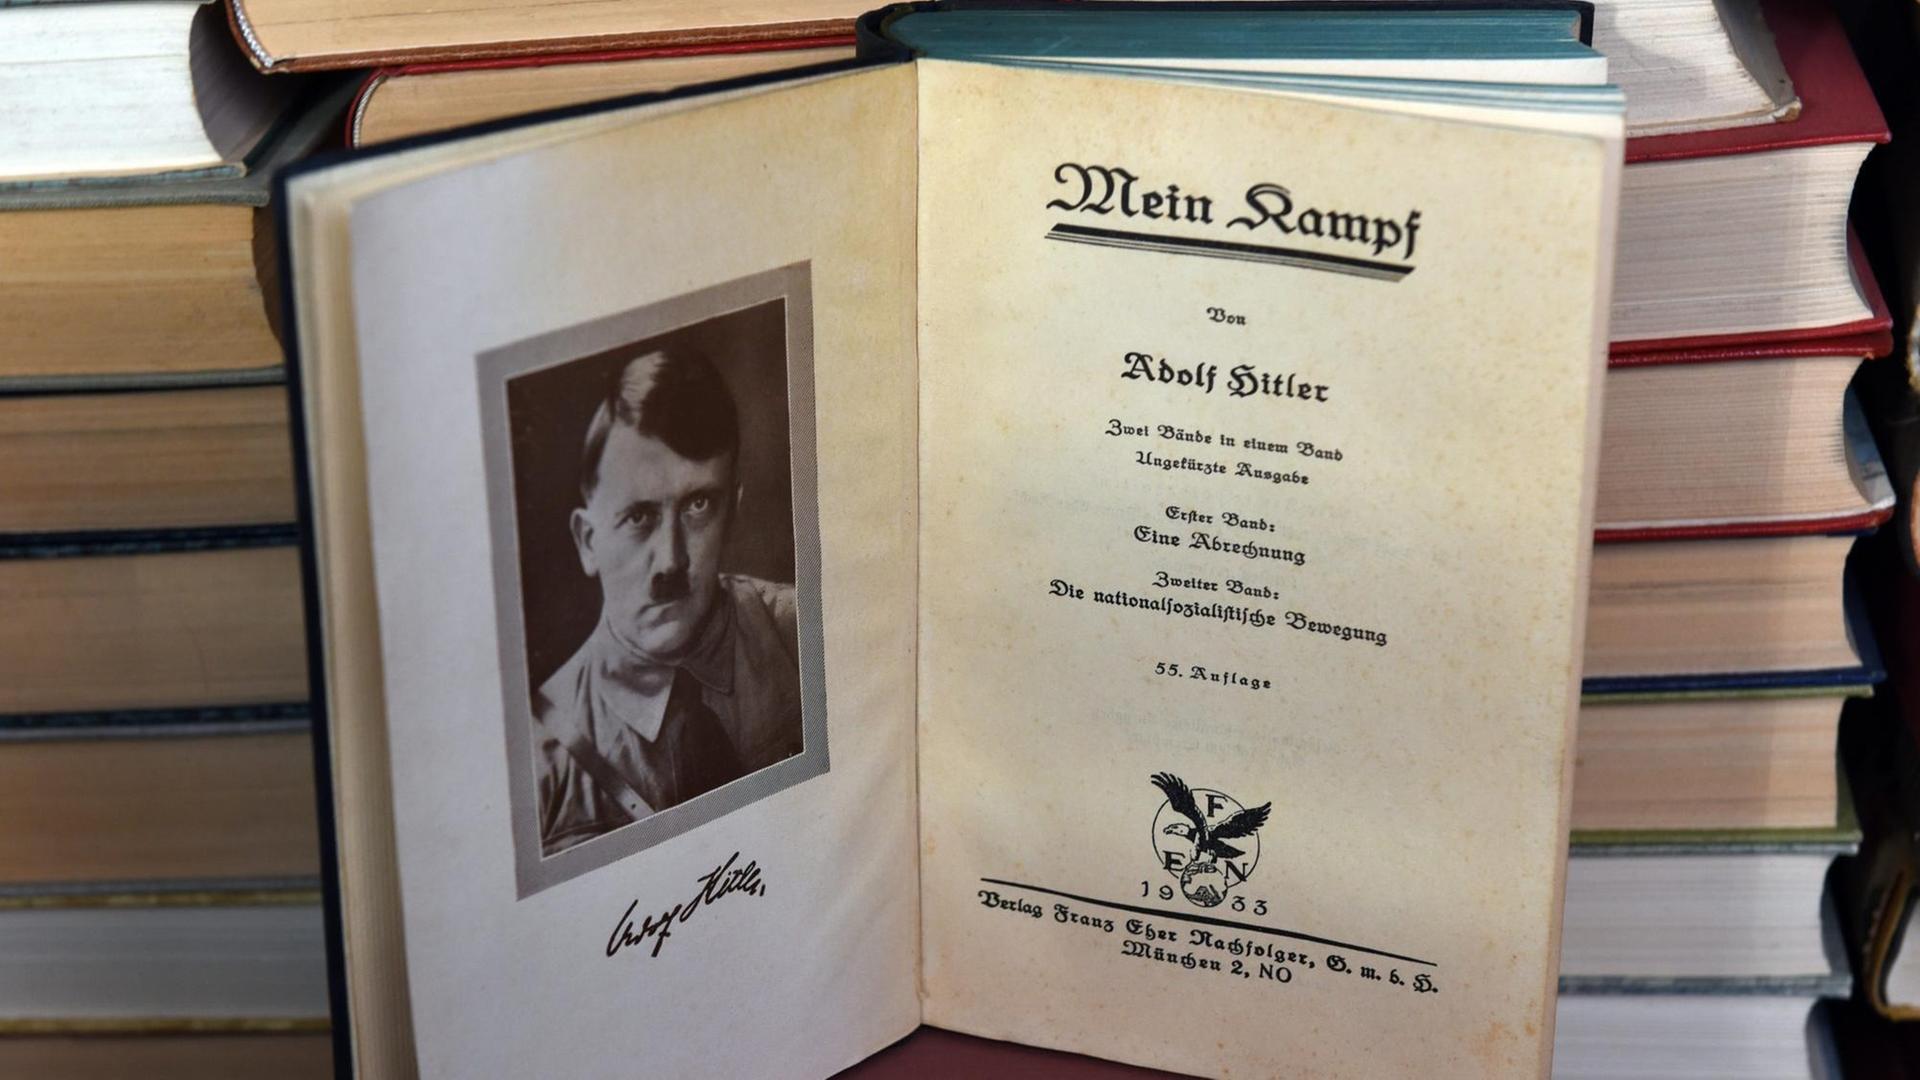 Das geöffnete Buch von Adolf Hitlers Propagandaschrift "Mein Kampf" steht in einem Bücherregal.